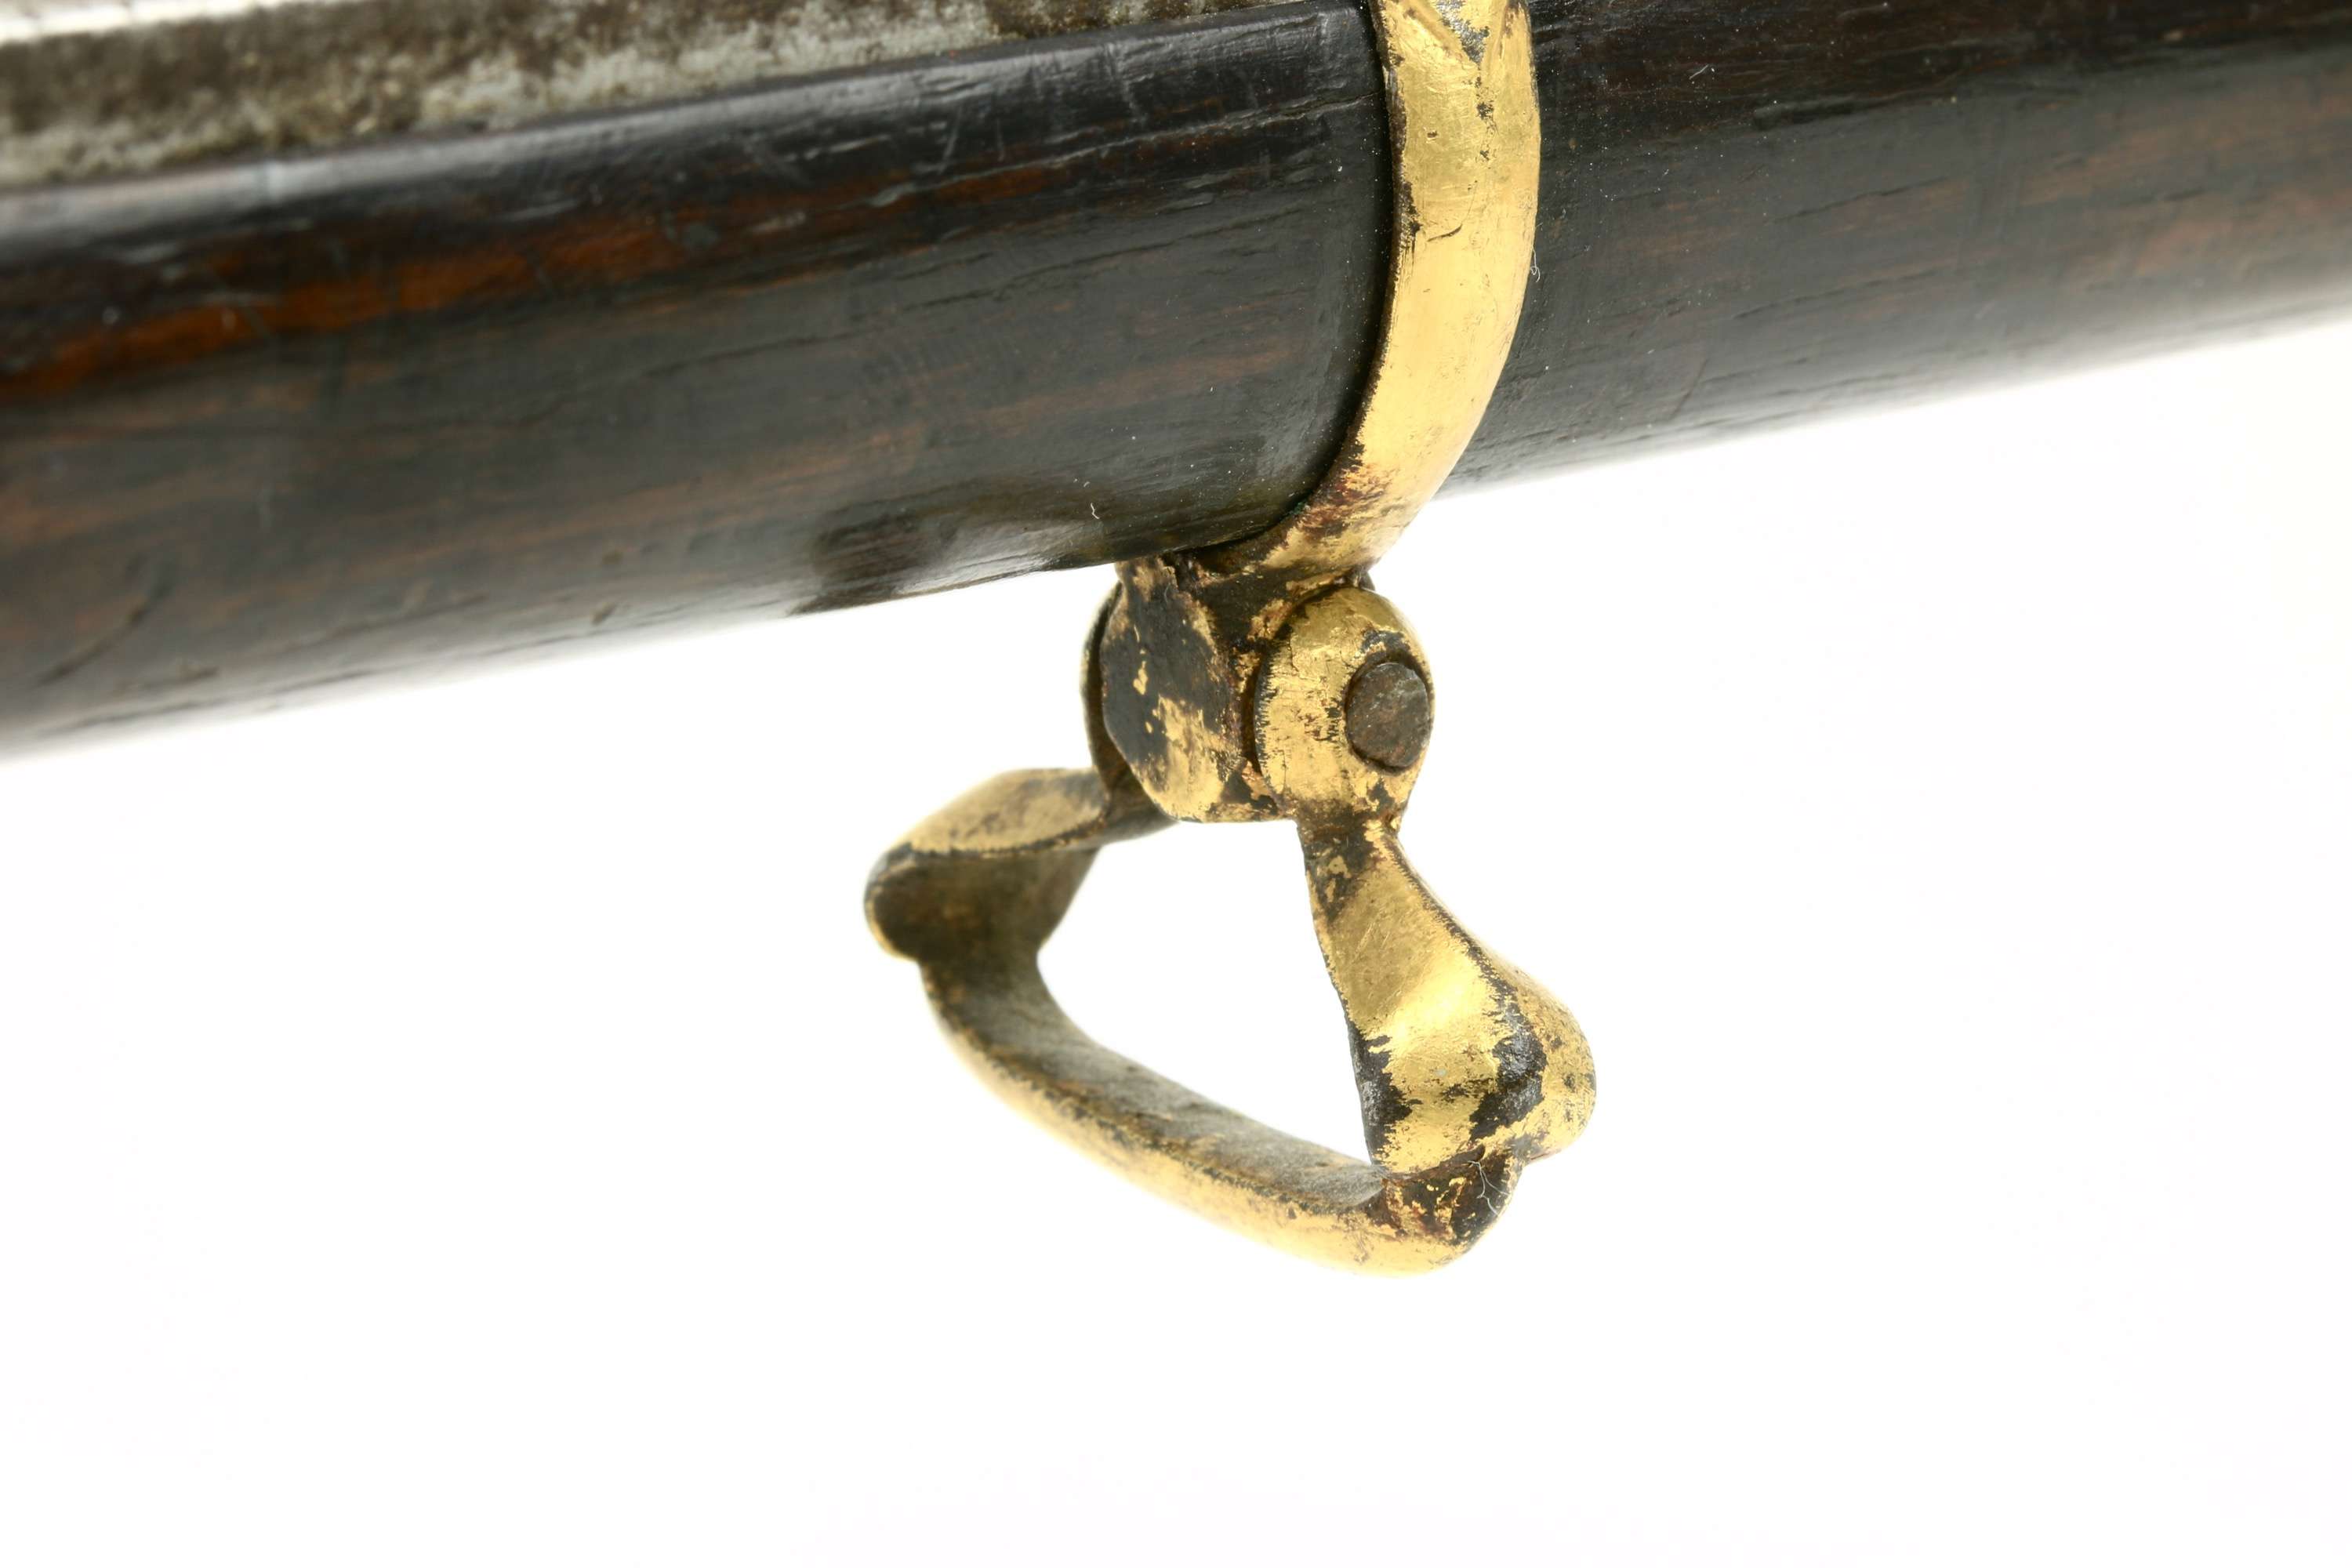 Fine flintlock musket from Sindh